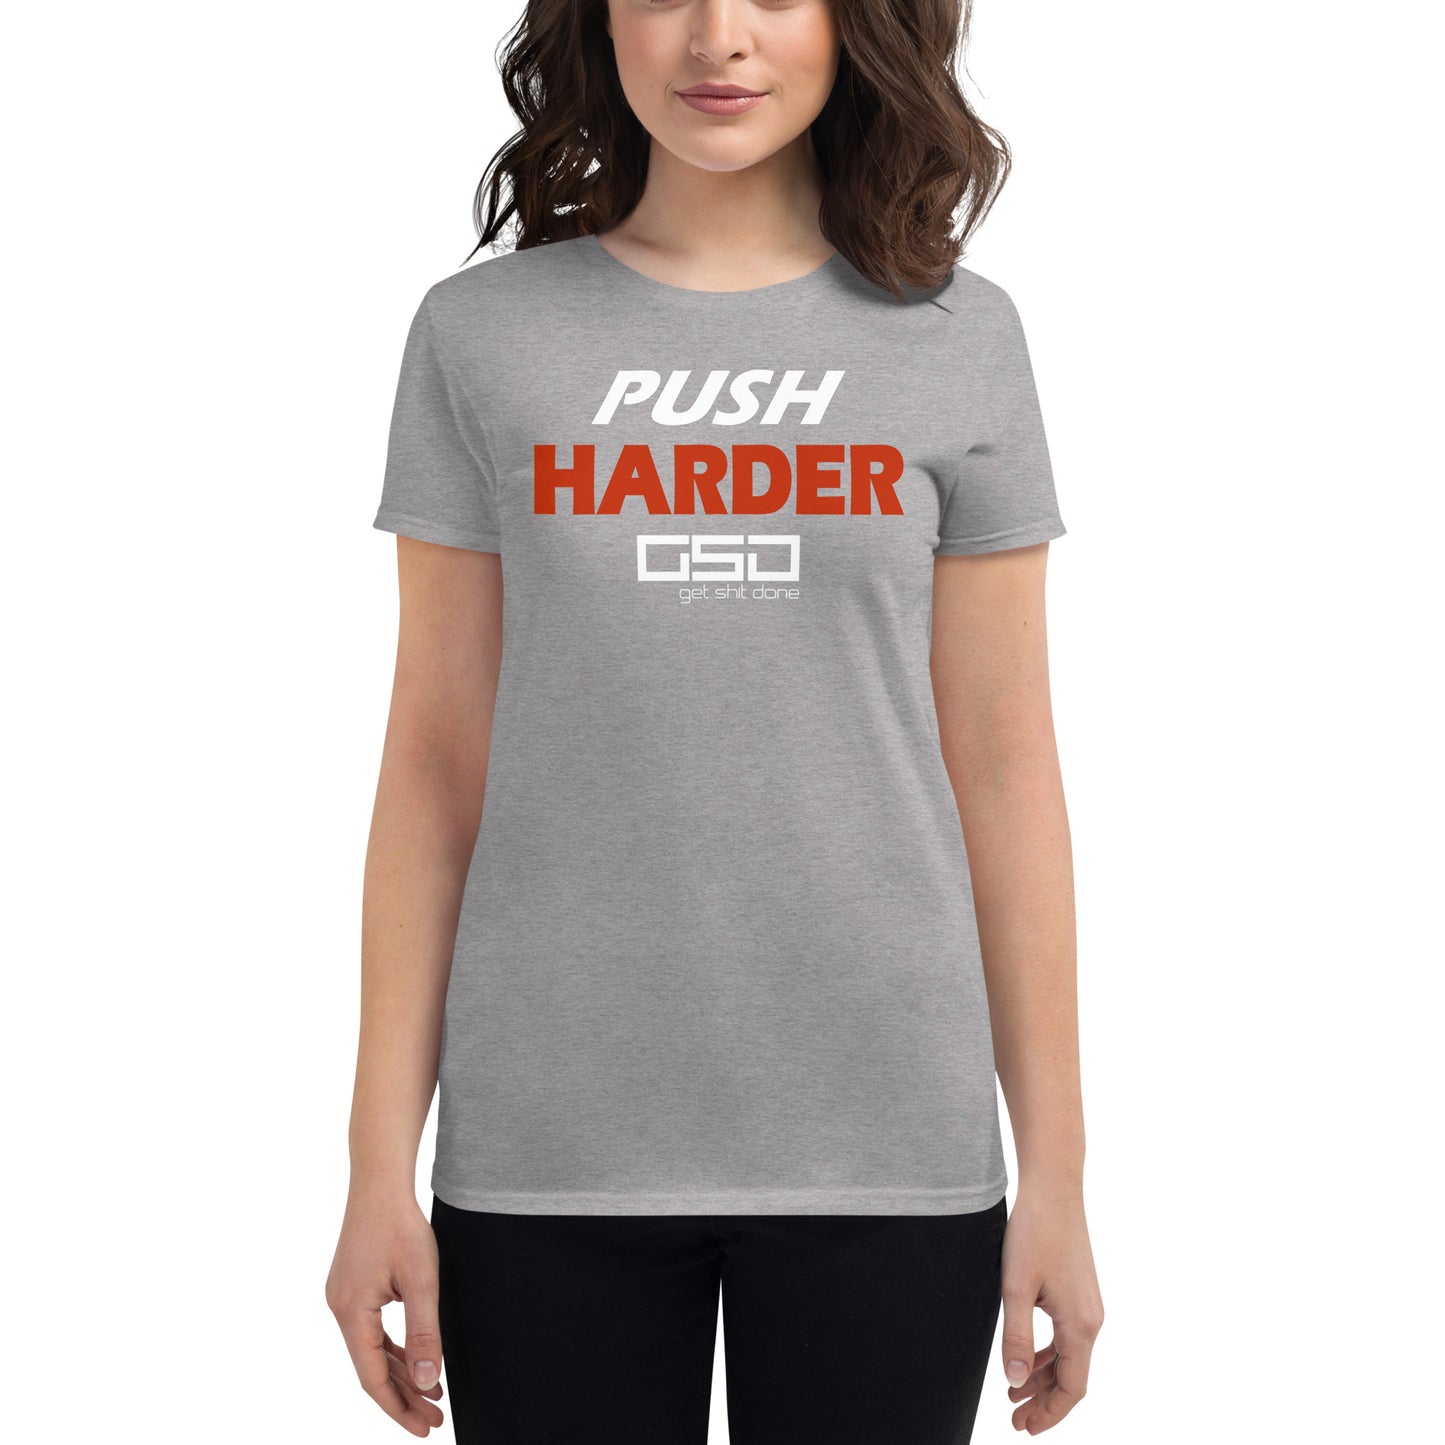 Push Harder-Women's Tee